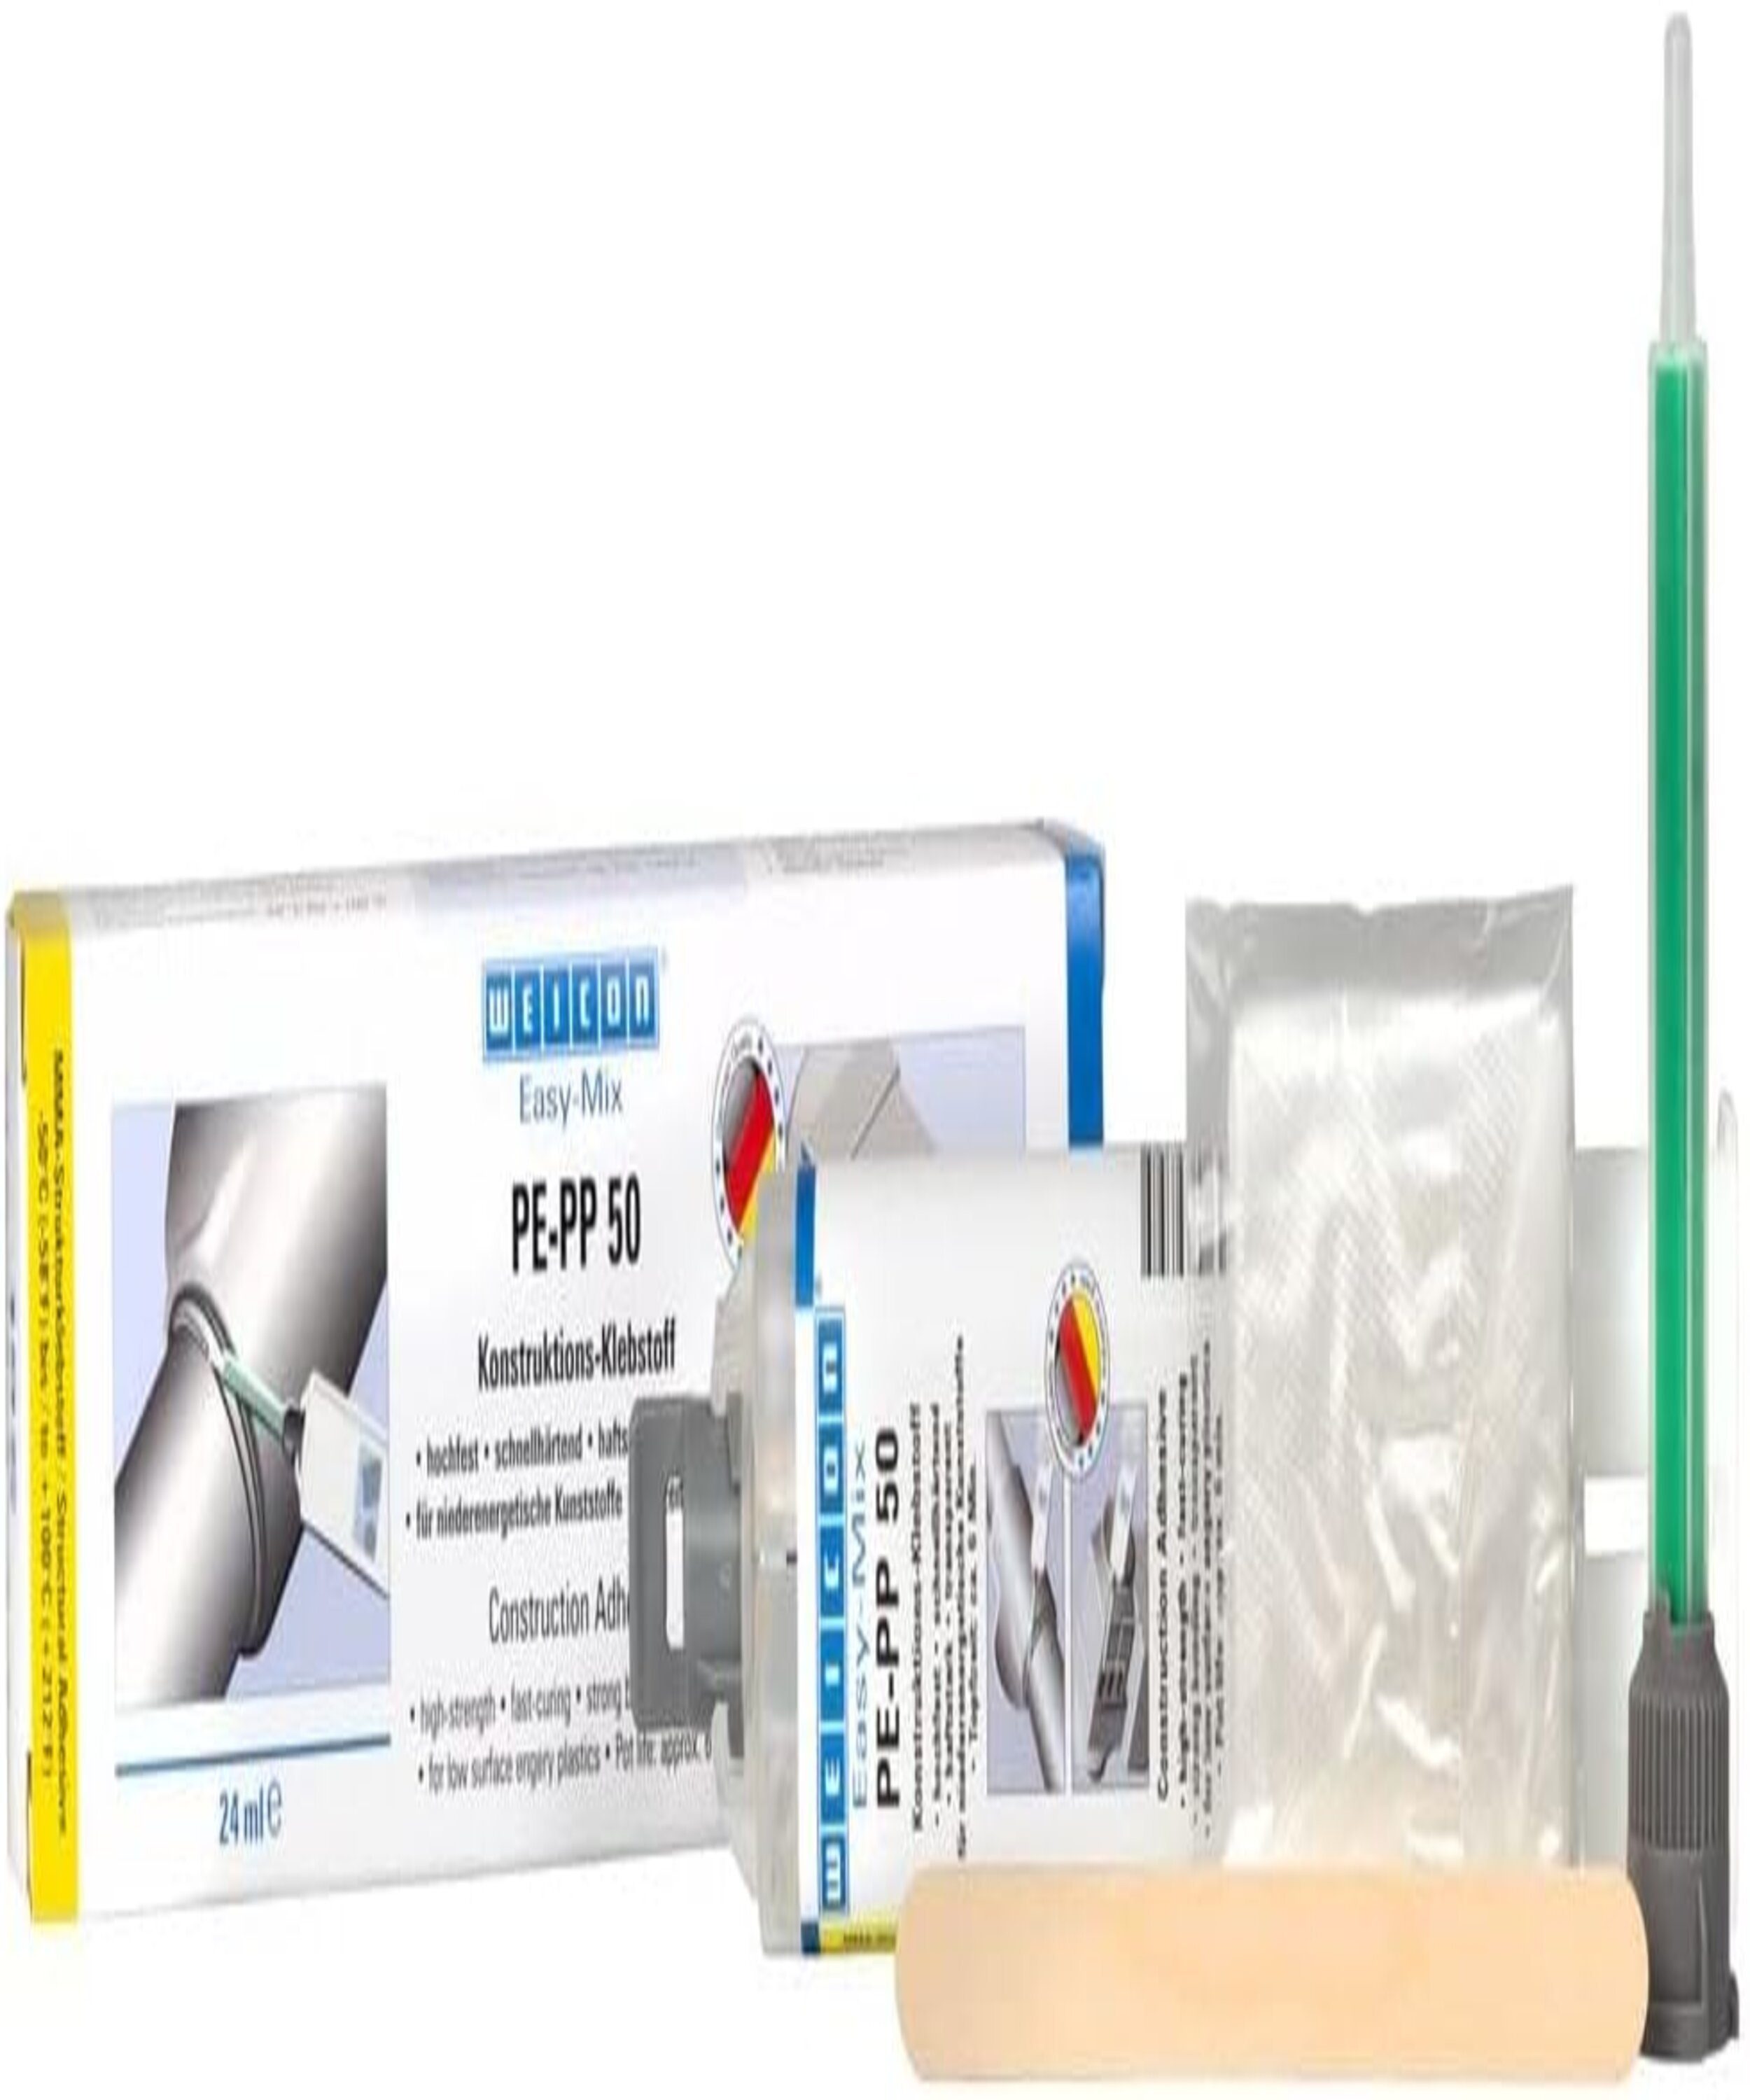 WEICON 2-Komponentenkleber Easy-Mix PE-PP 50, Klebstoff für spezielle  Kunststoffe - Set, (Packung), für niederenergetische Kunststoffe